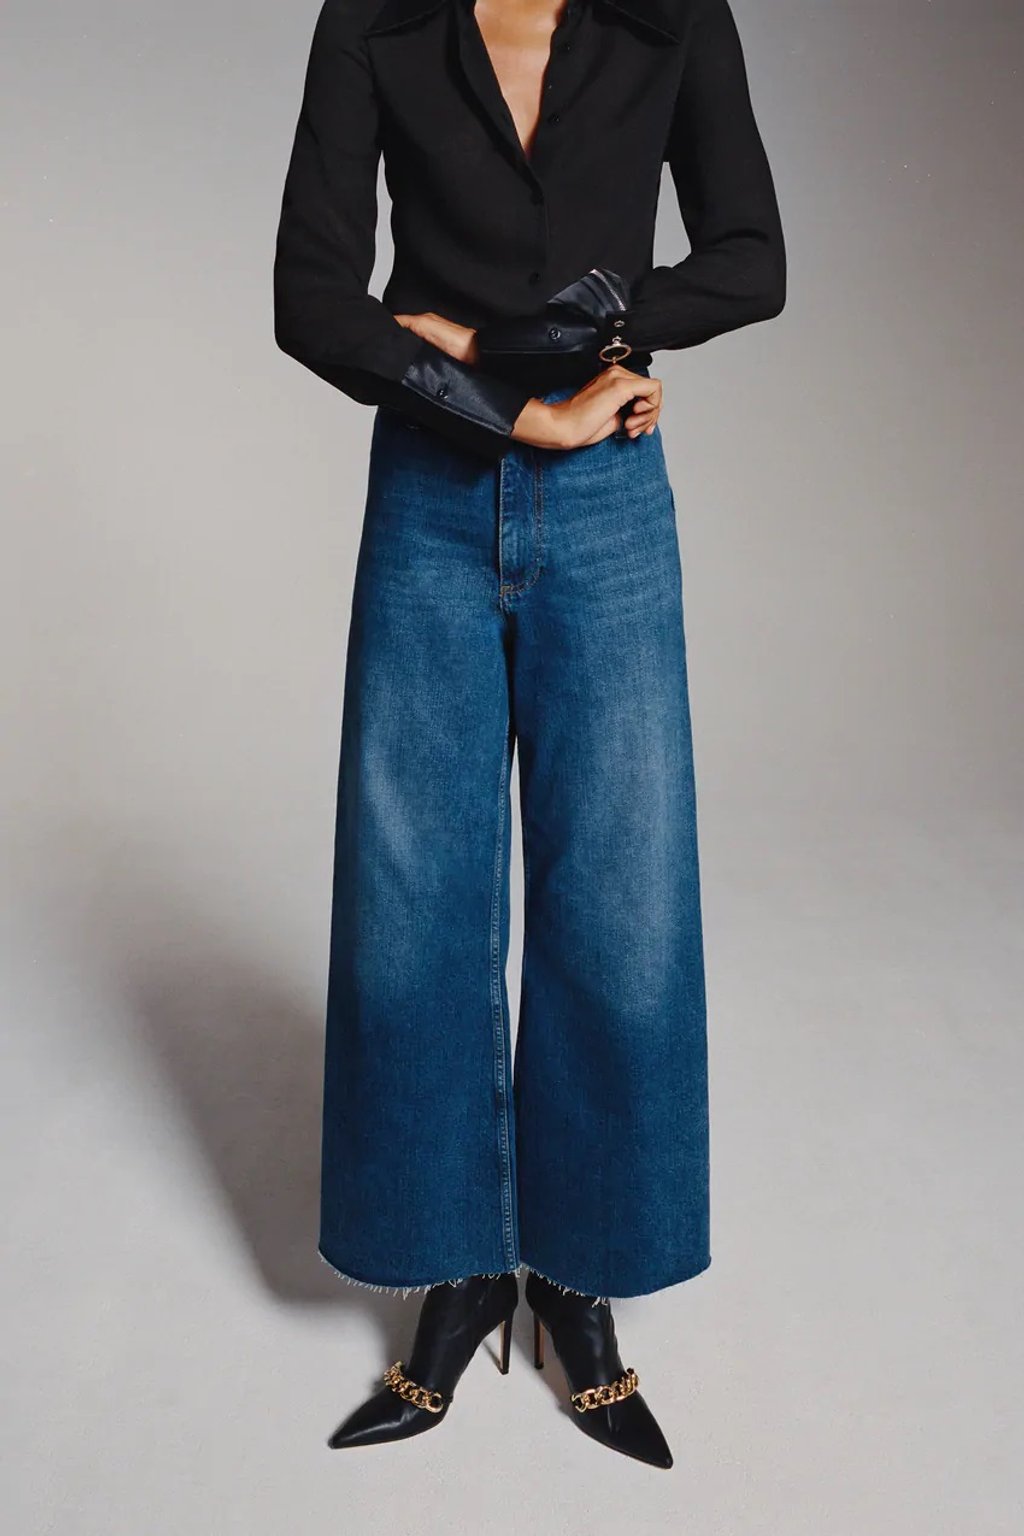 Áo cardigan lông dáng ngắn giá 899.000 VNĐ, quần jeans cạp cao ống loe giá 1.299.000 VNĐ